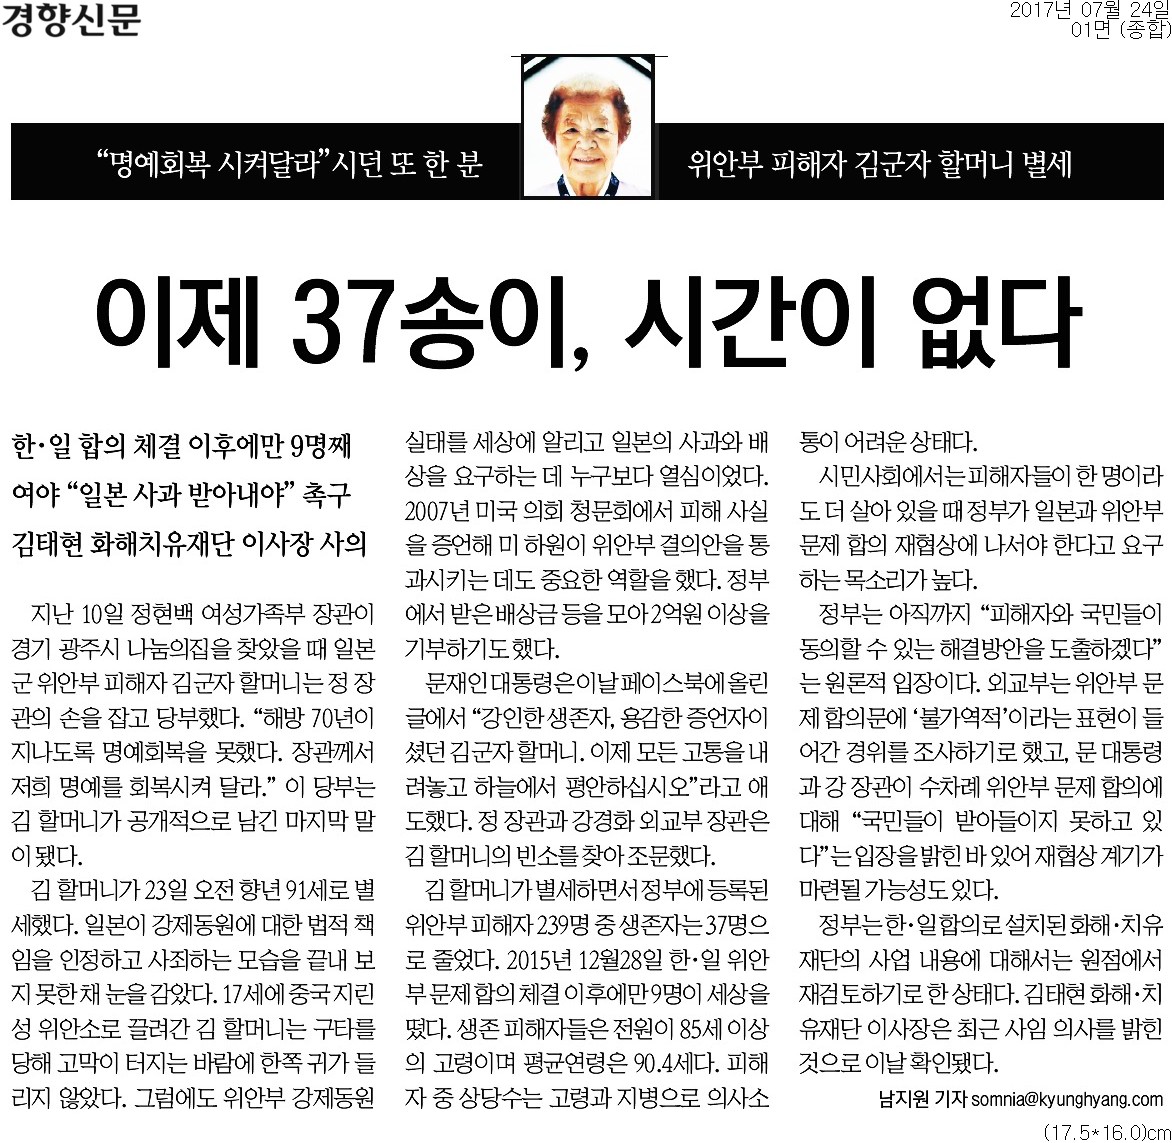 ▲ 경향신문 1면 기사